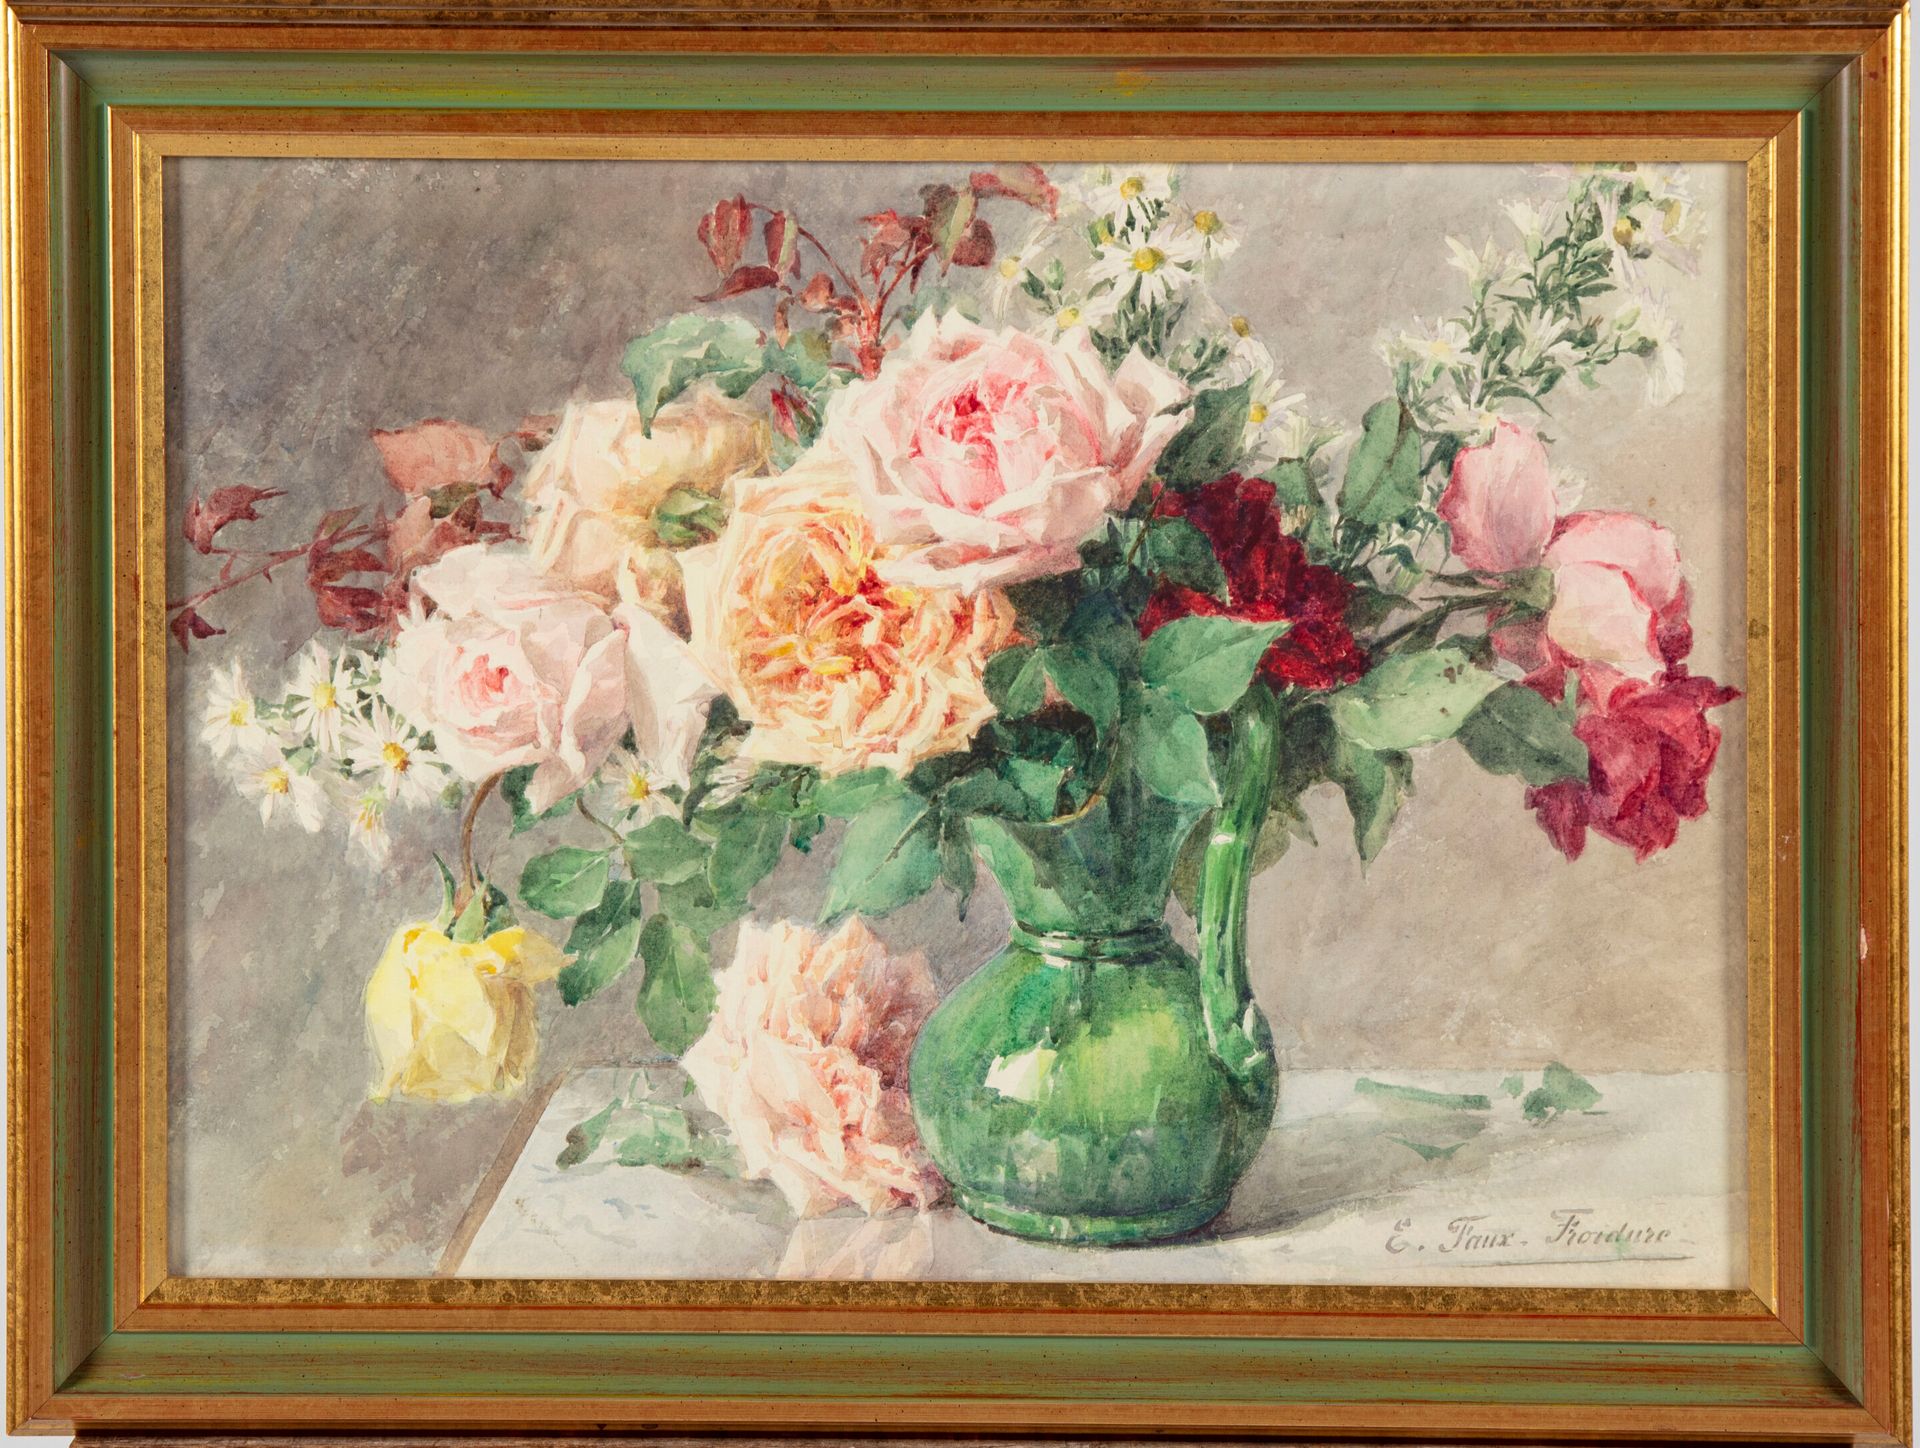 Null 欧也妮-福克斯-弗罗伊杜尔 ( 1886-?)

一束玫瑰花

水彩画

右下方有签名

38 x 53 厘米